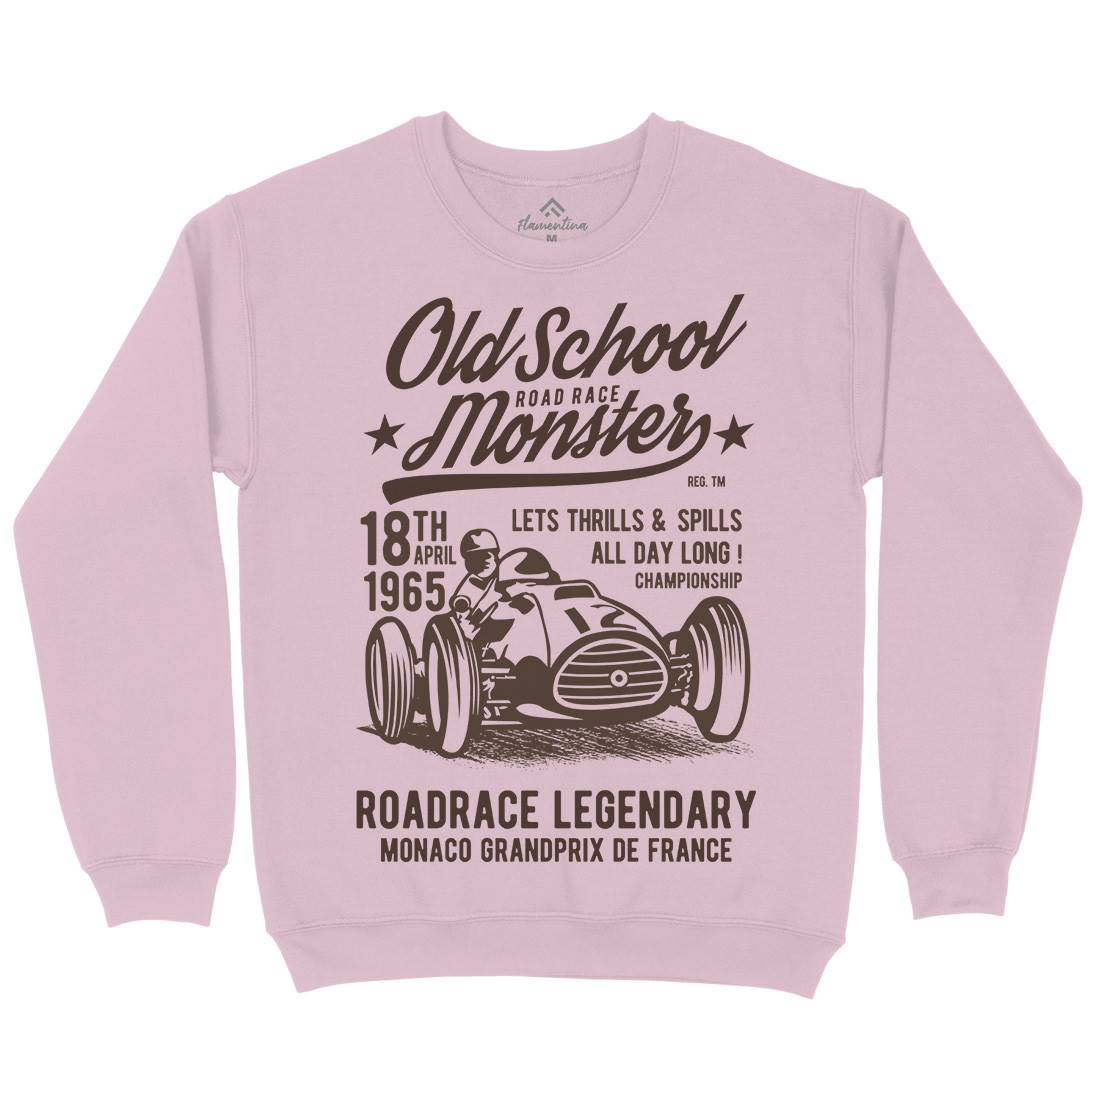 Old School Road Race Monster Kids Crew Neck Sweatshirt Cars B240